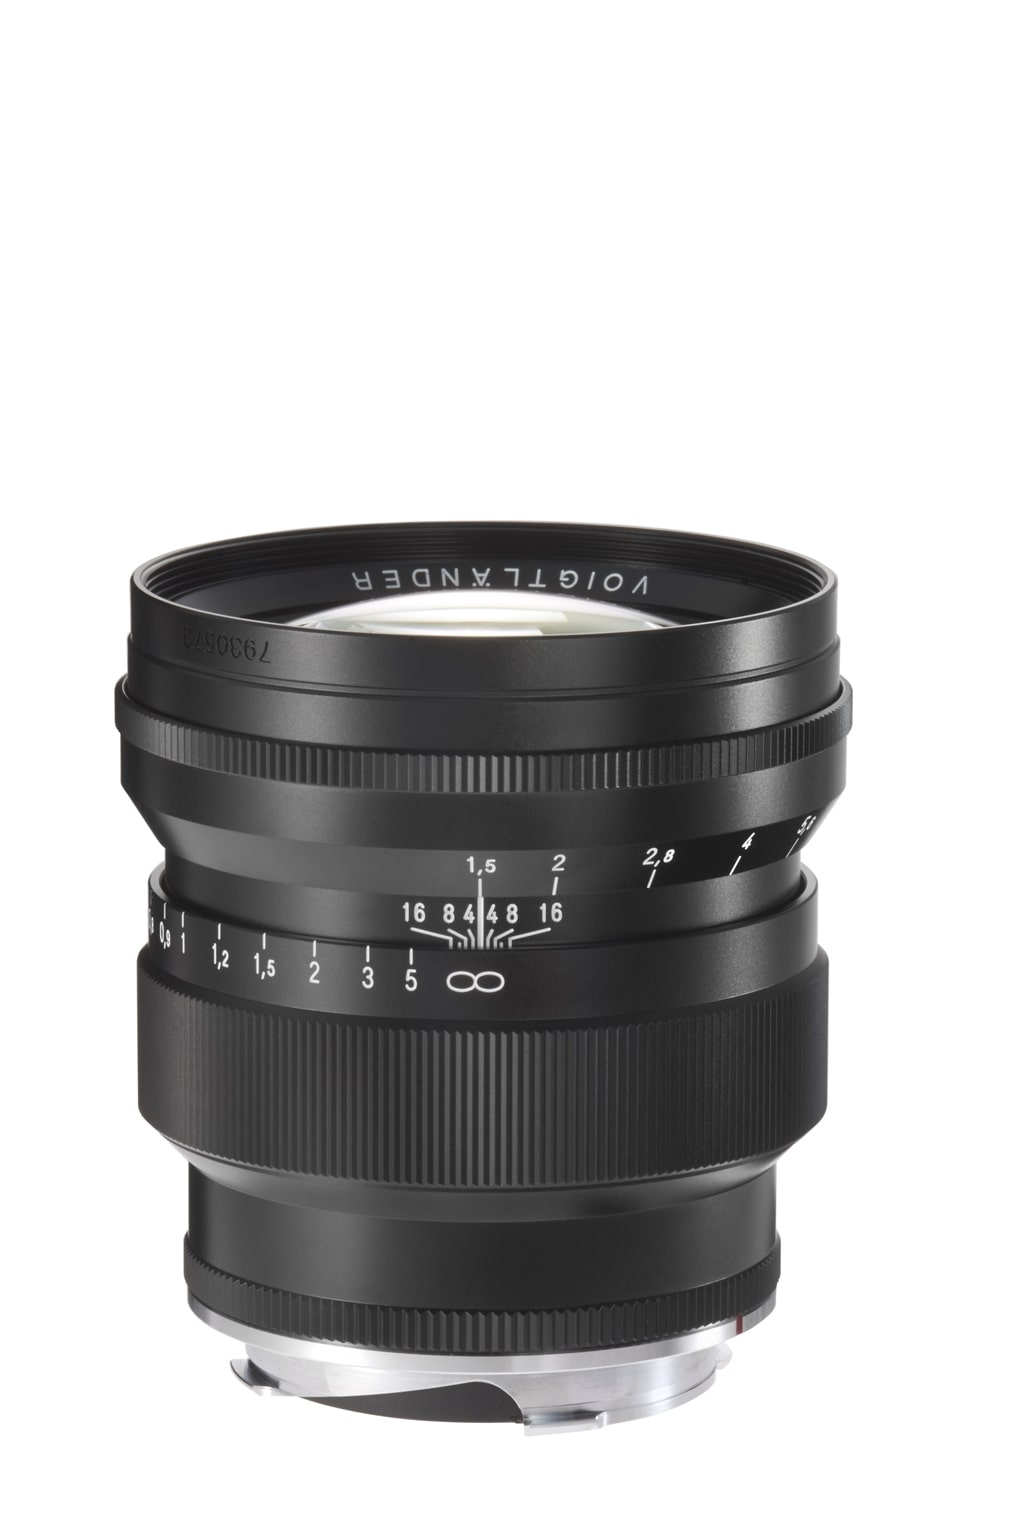 Voigtländer VM 75mm 1,5 Nokton Leica M schwarz